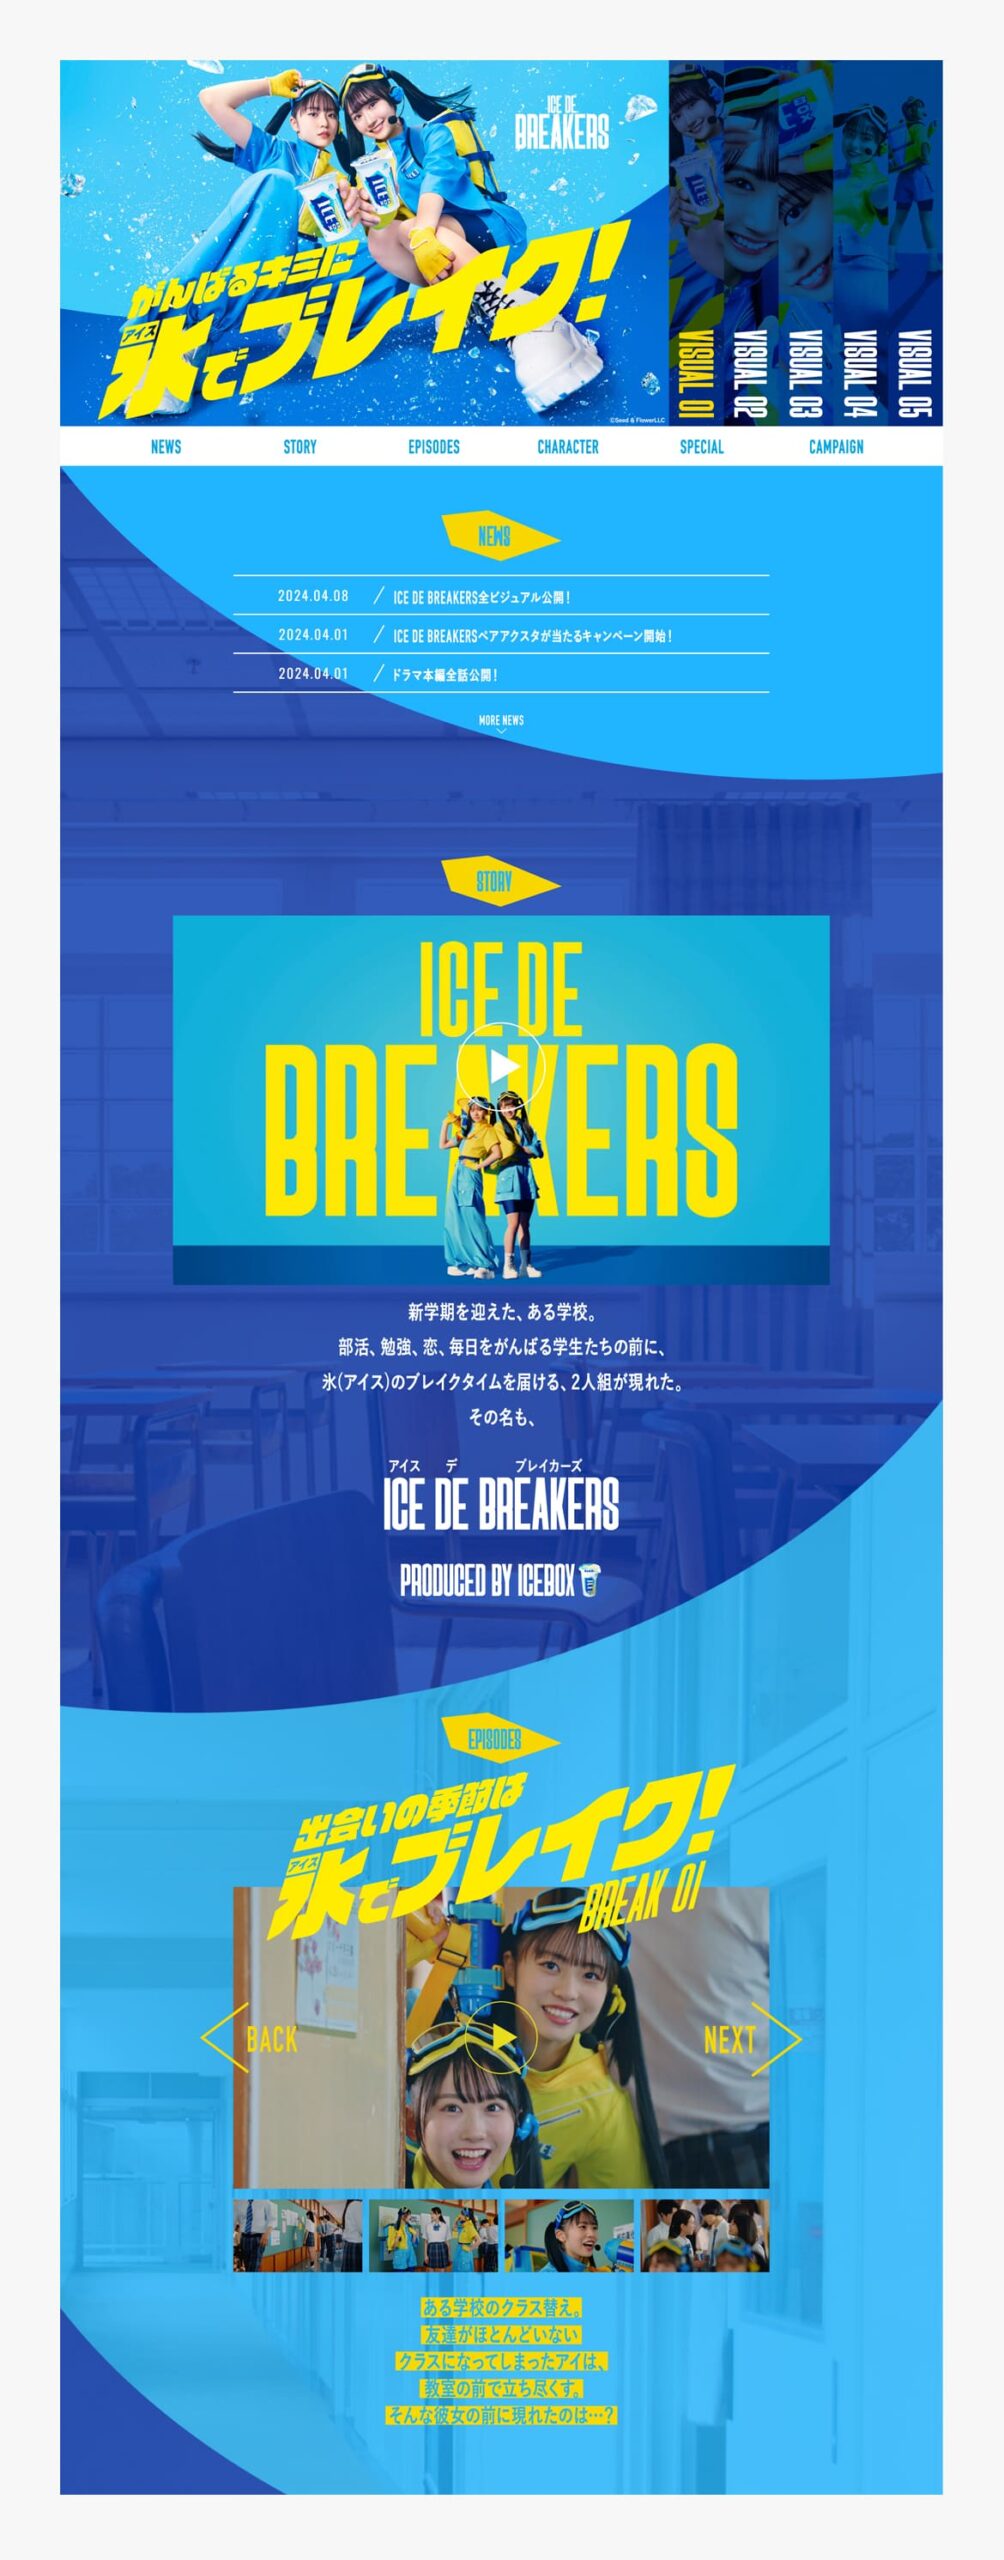 ICE DE BREAKERS